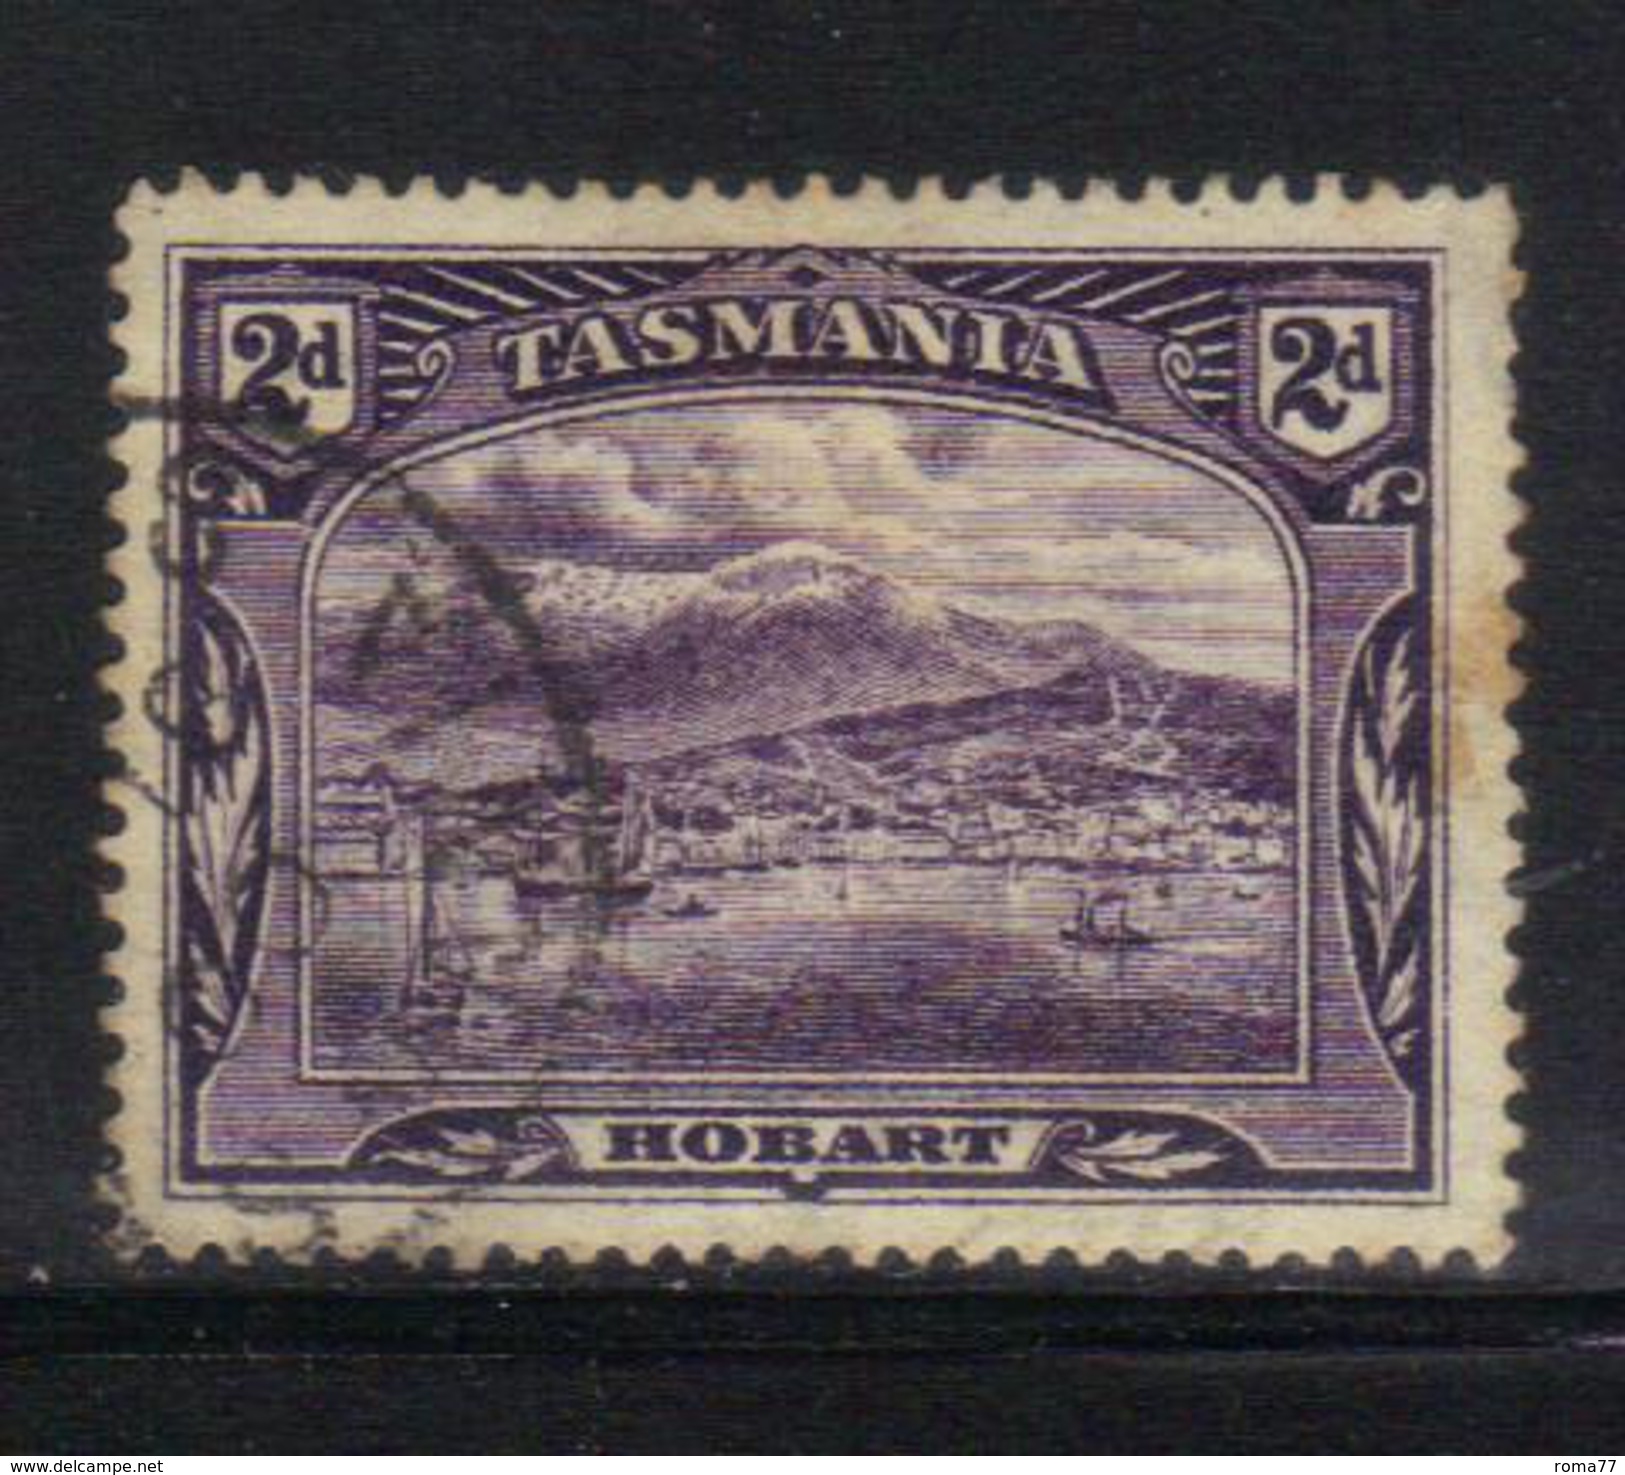 T1908 - TASMANIA 2 Pence Wmk TAS Used - Used Stamps